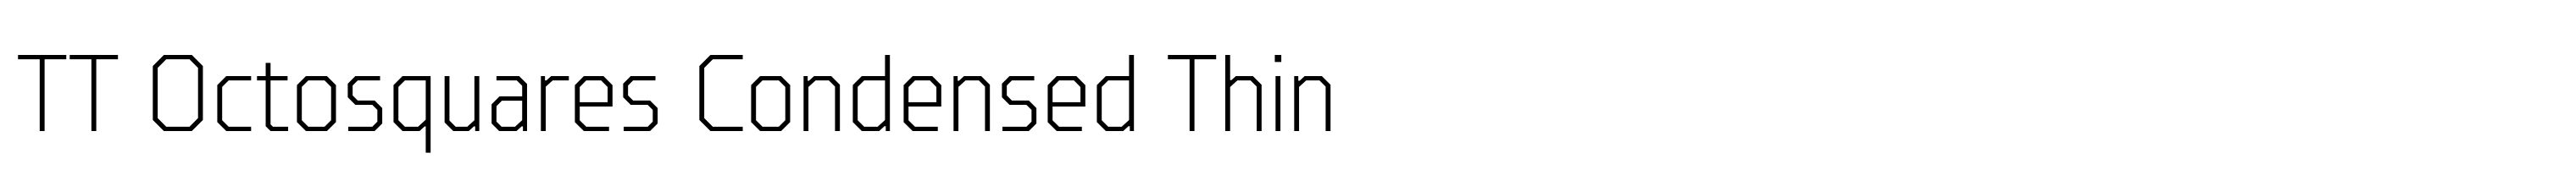 TT Octosquares Condensed Thin